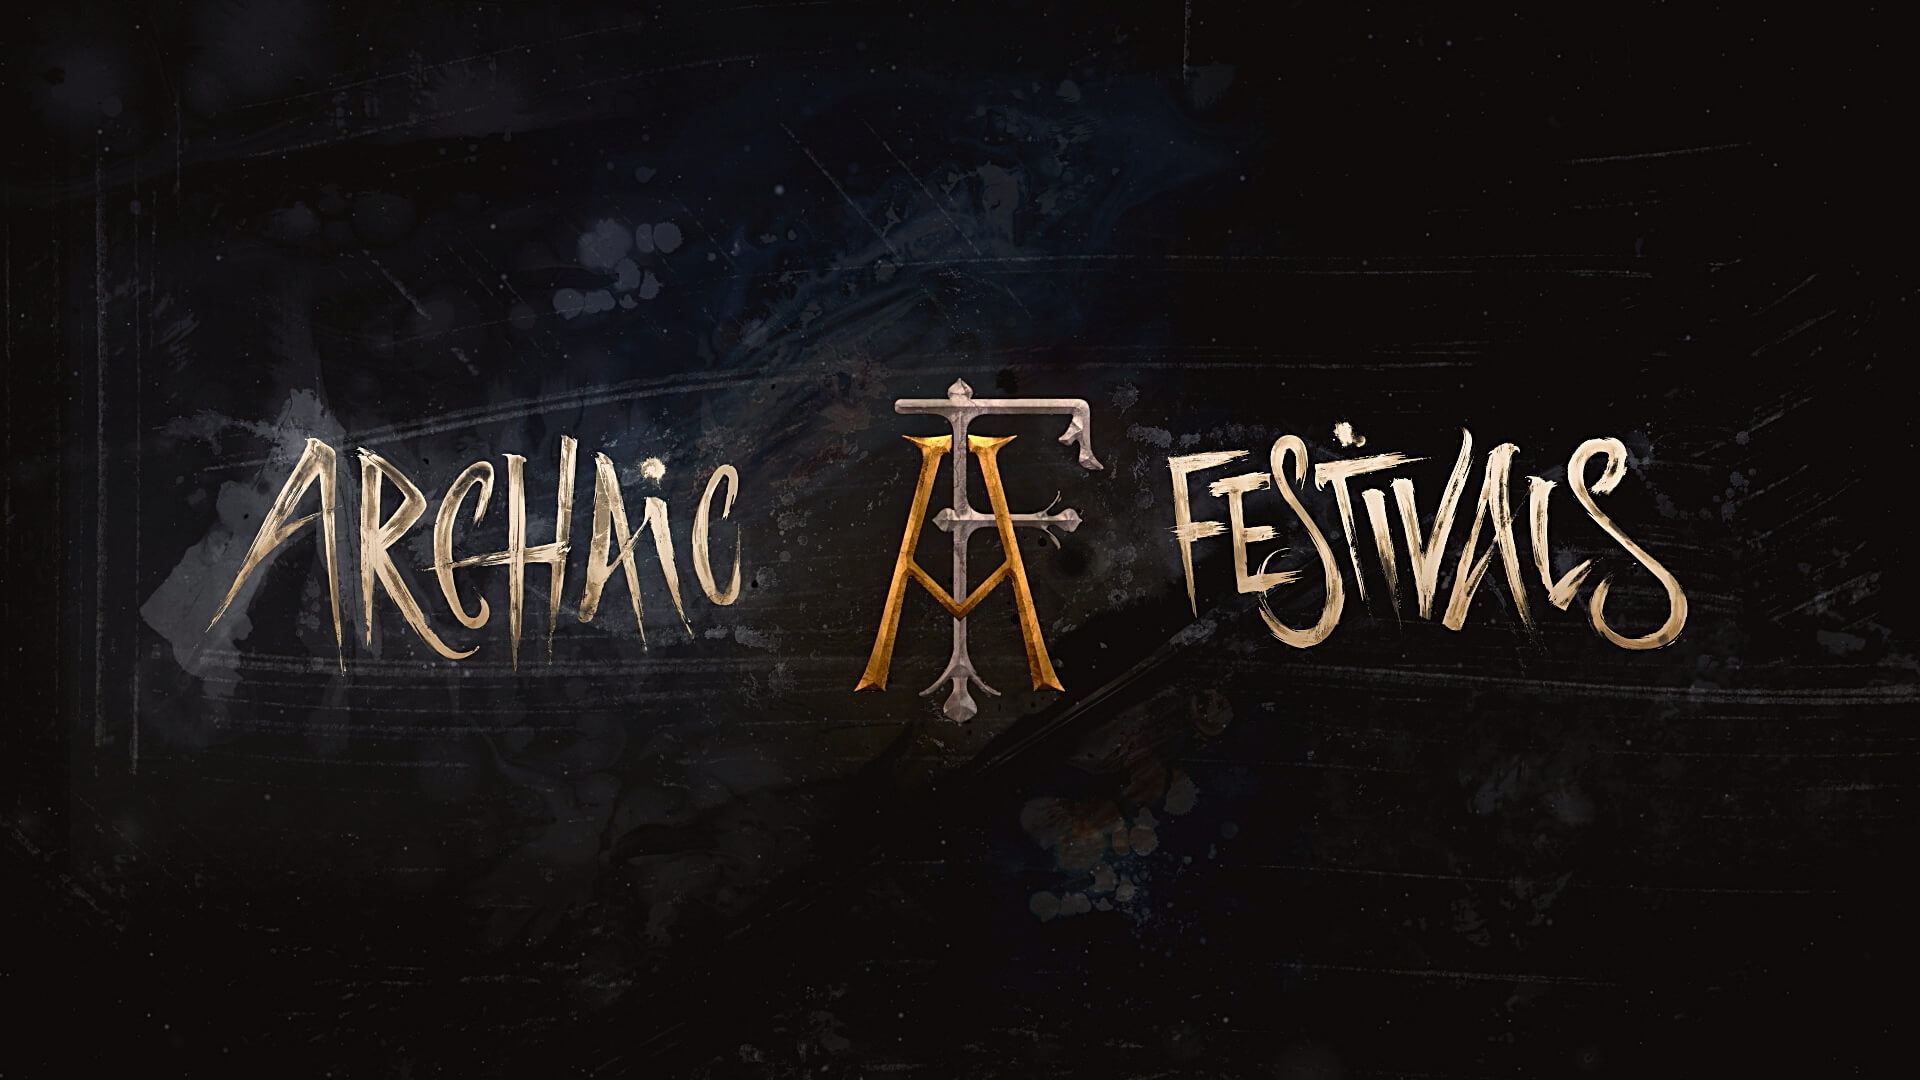 Synchronisation der TV Serie Archaic Festivals in unserer Filmproduktionsfirma